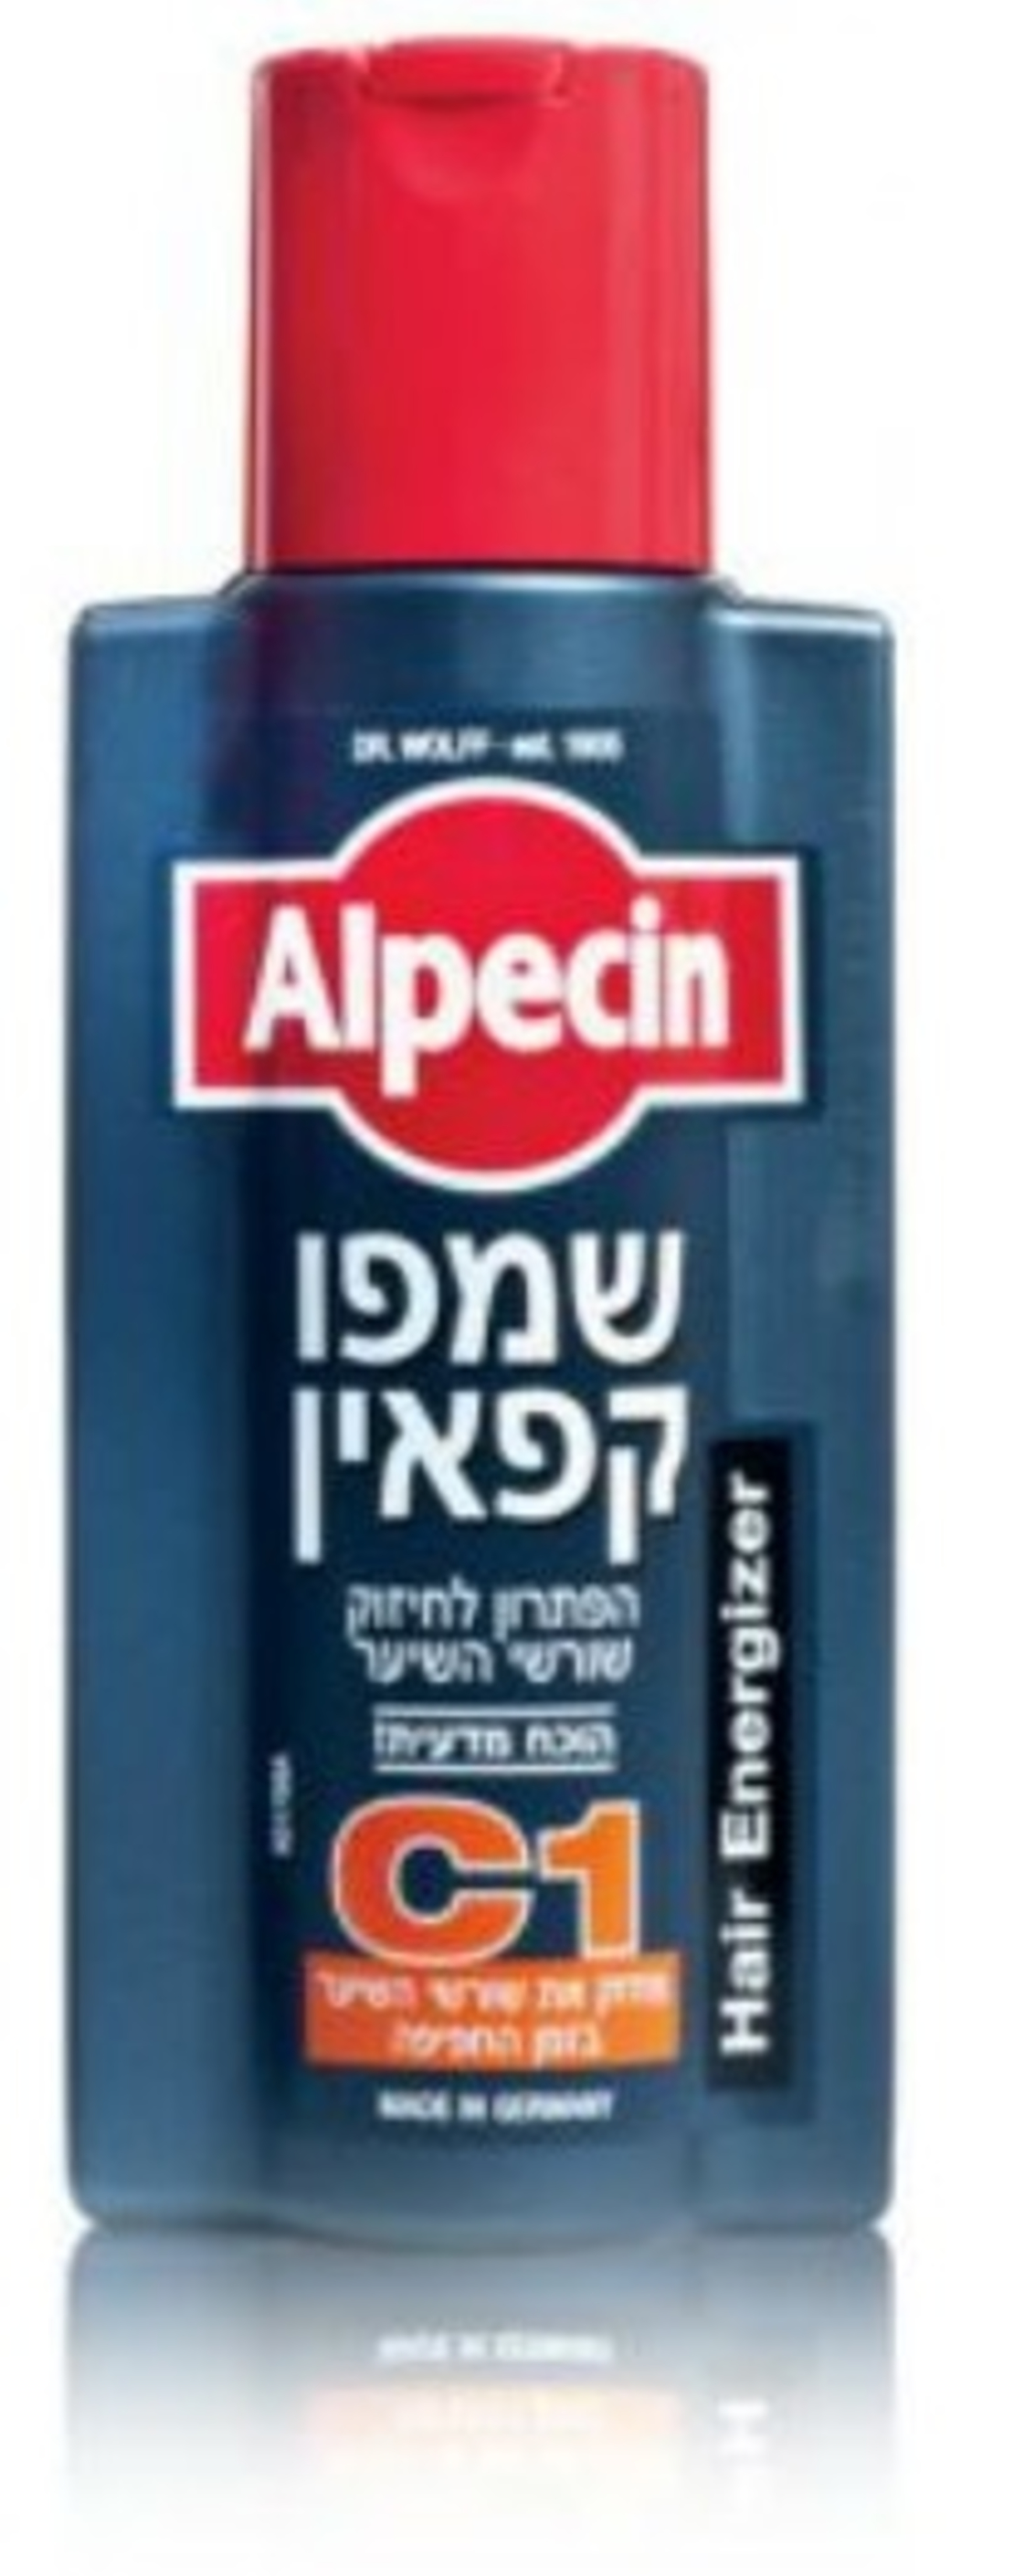 אלפסין שמפו קפאין - לחיזוק שורשי השיער Alpecin Shampoo